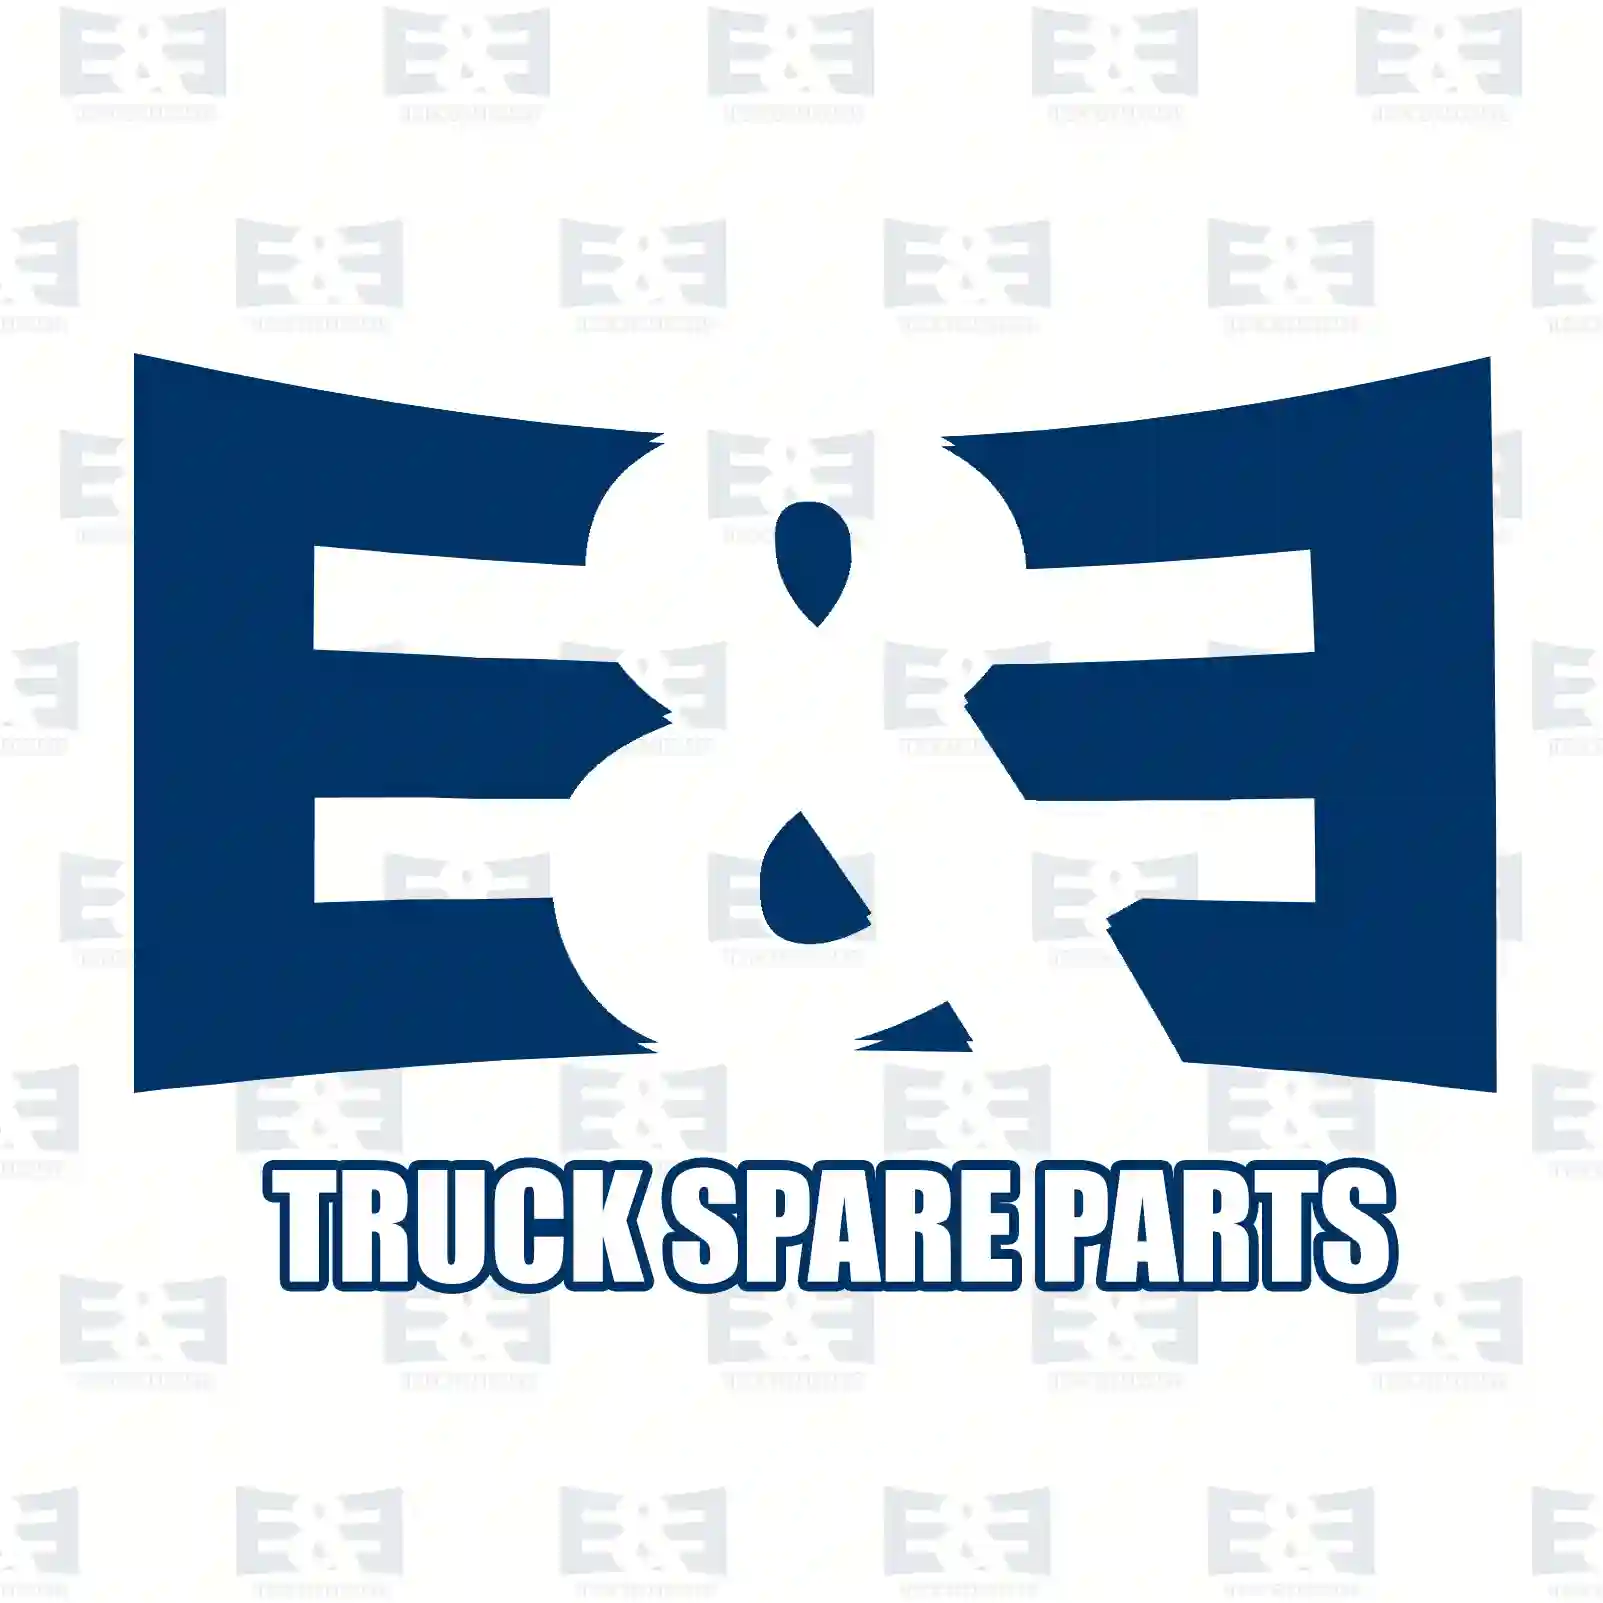 Rubber mounting, parabolic suspension, rear axle, left, 2E2283697, 81962100548, 81962100555, 2V5511149, ZG41490-0008 ||  2E2283697 E&E Truck Spare Parts | Truck Spare Parts, Auotomotive Spare Parts Rubber mounting, parabolic suspension, rear axle, left, 2E2283697, 81962100548, 81962100555, 2V5511149, ZG41490-0008 ||  2E2283697 E&E Truck Spare Parts | Truck Spare Parts, Auotomotive Spare Parts